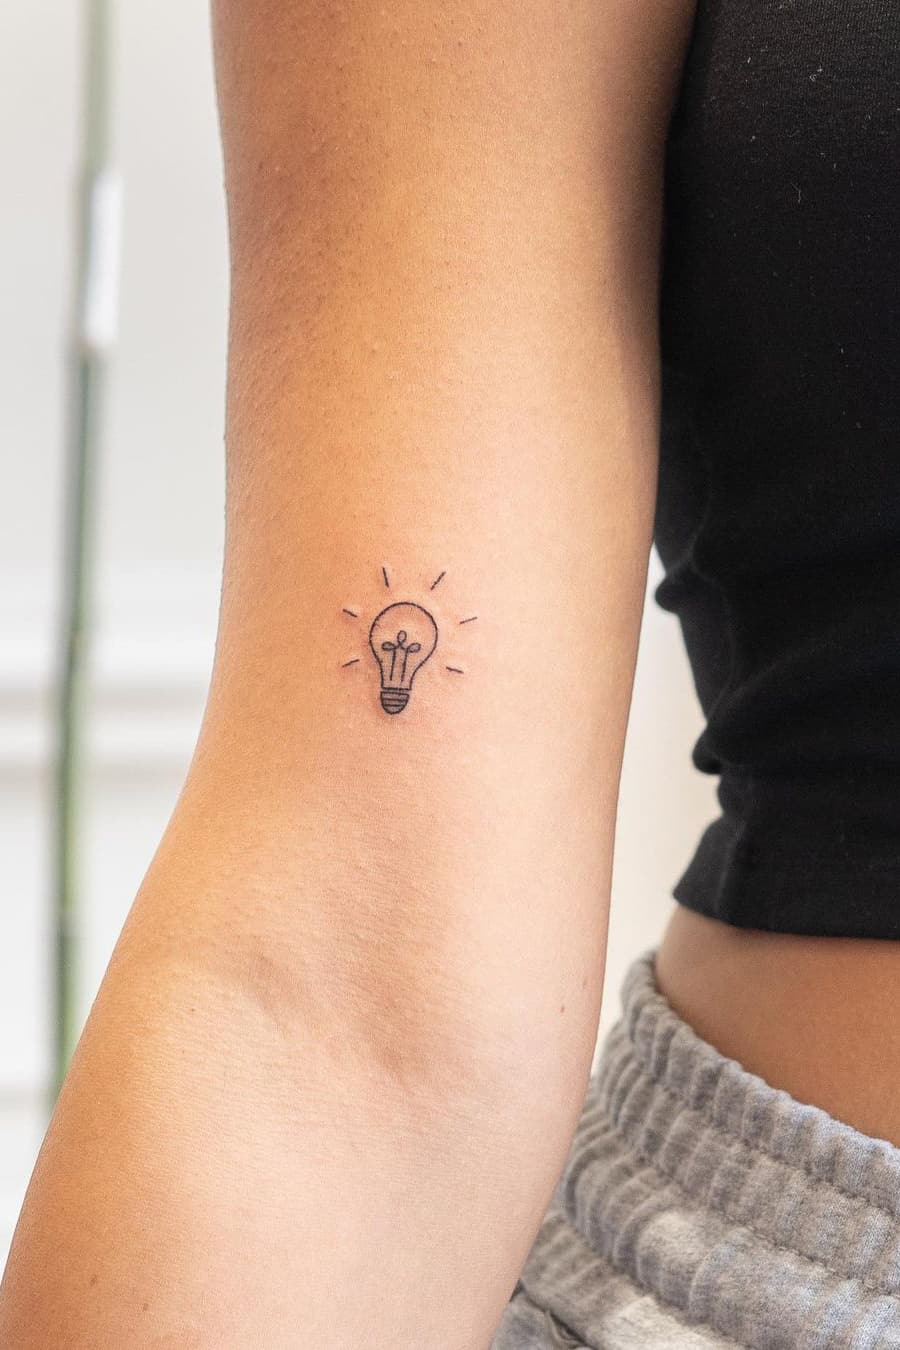 Tiny light bulb tattoo